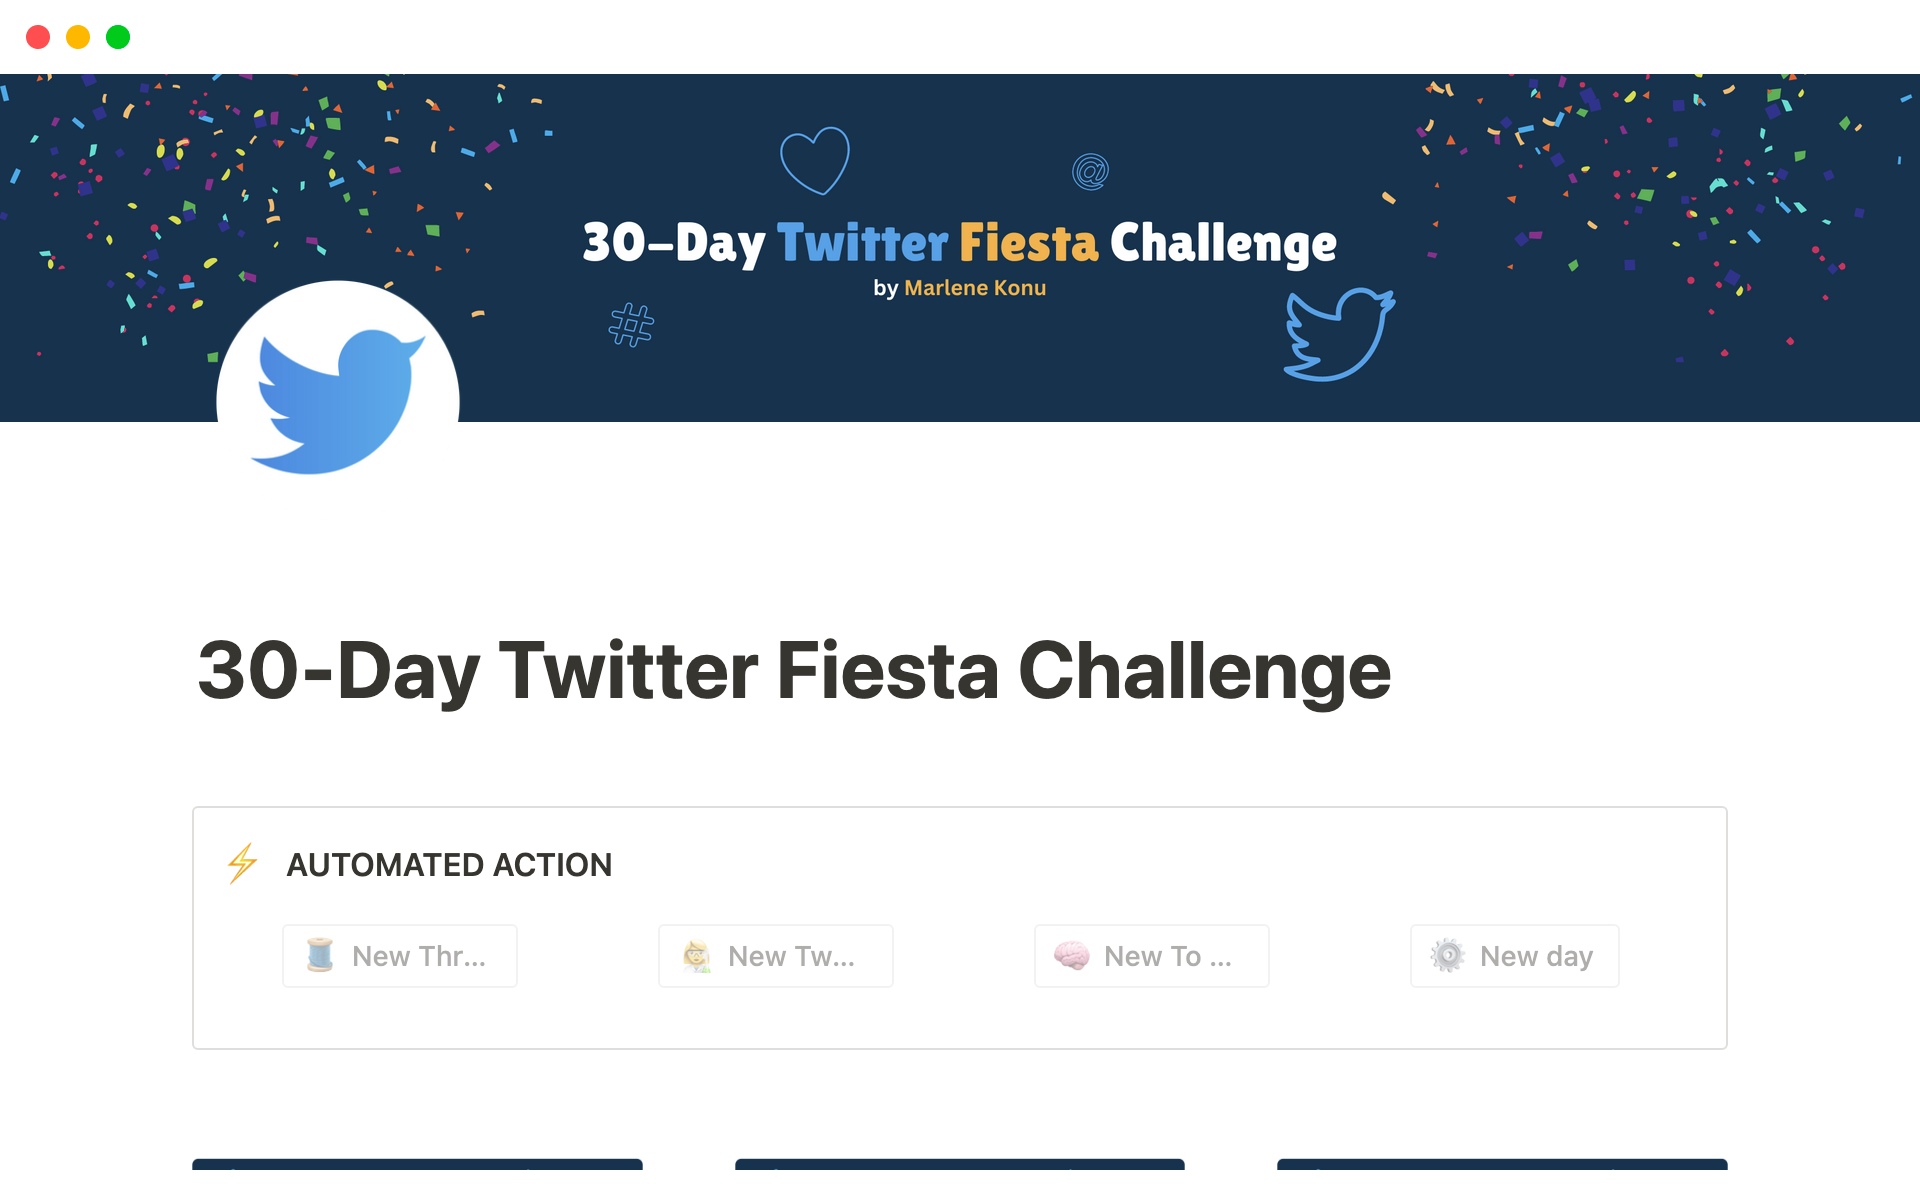 30-Day Twitter Fiesta Challenge님의 템플릿 미리보기